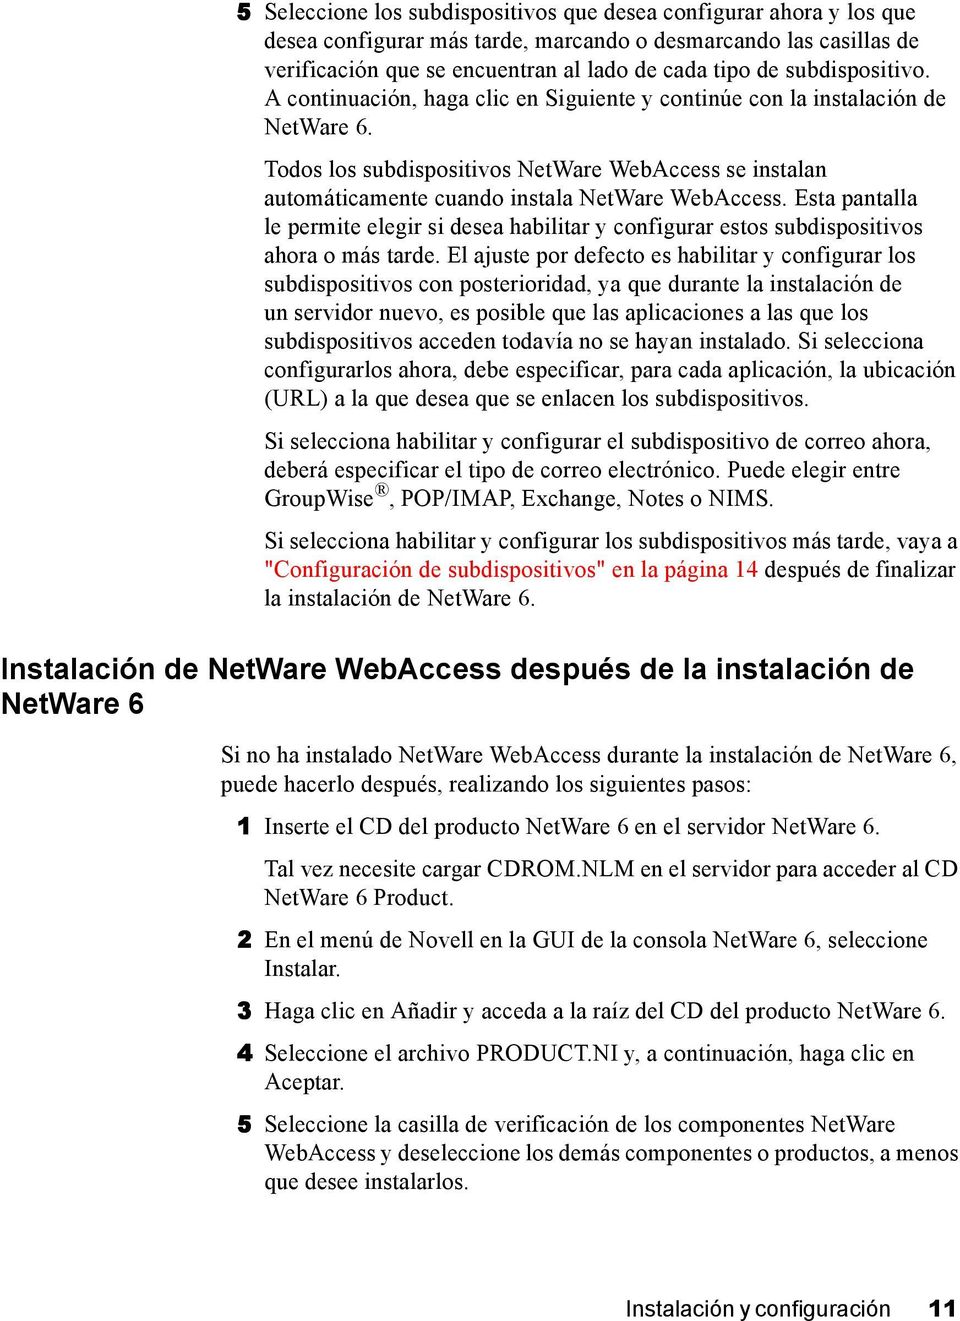 Todos los subdispositivos NetWare WebAccess se instalan automáticamente cuando instala NetWare WebAccess.